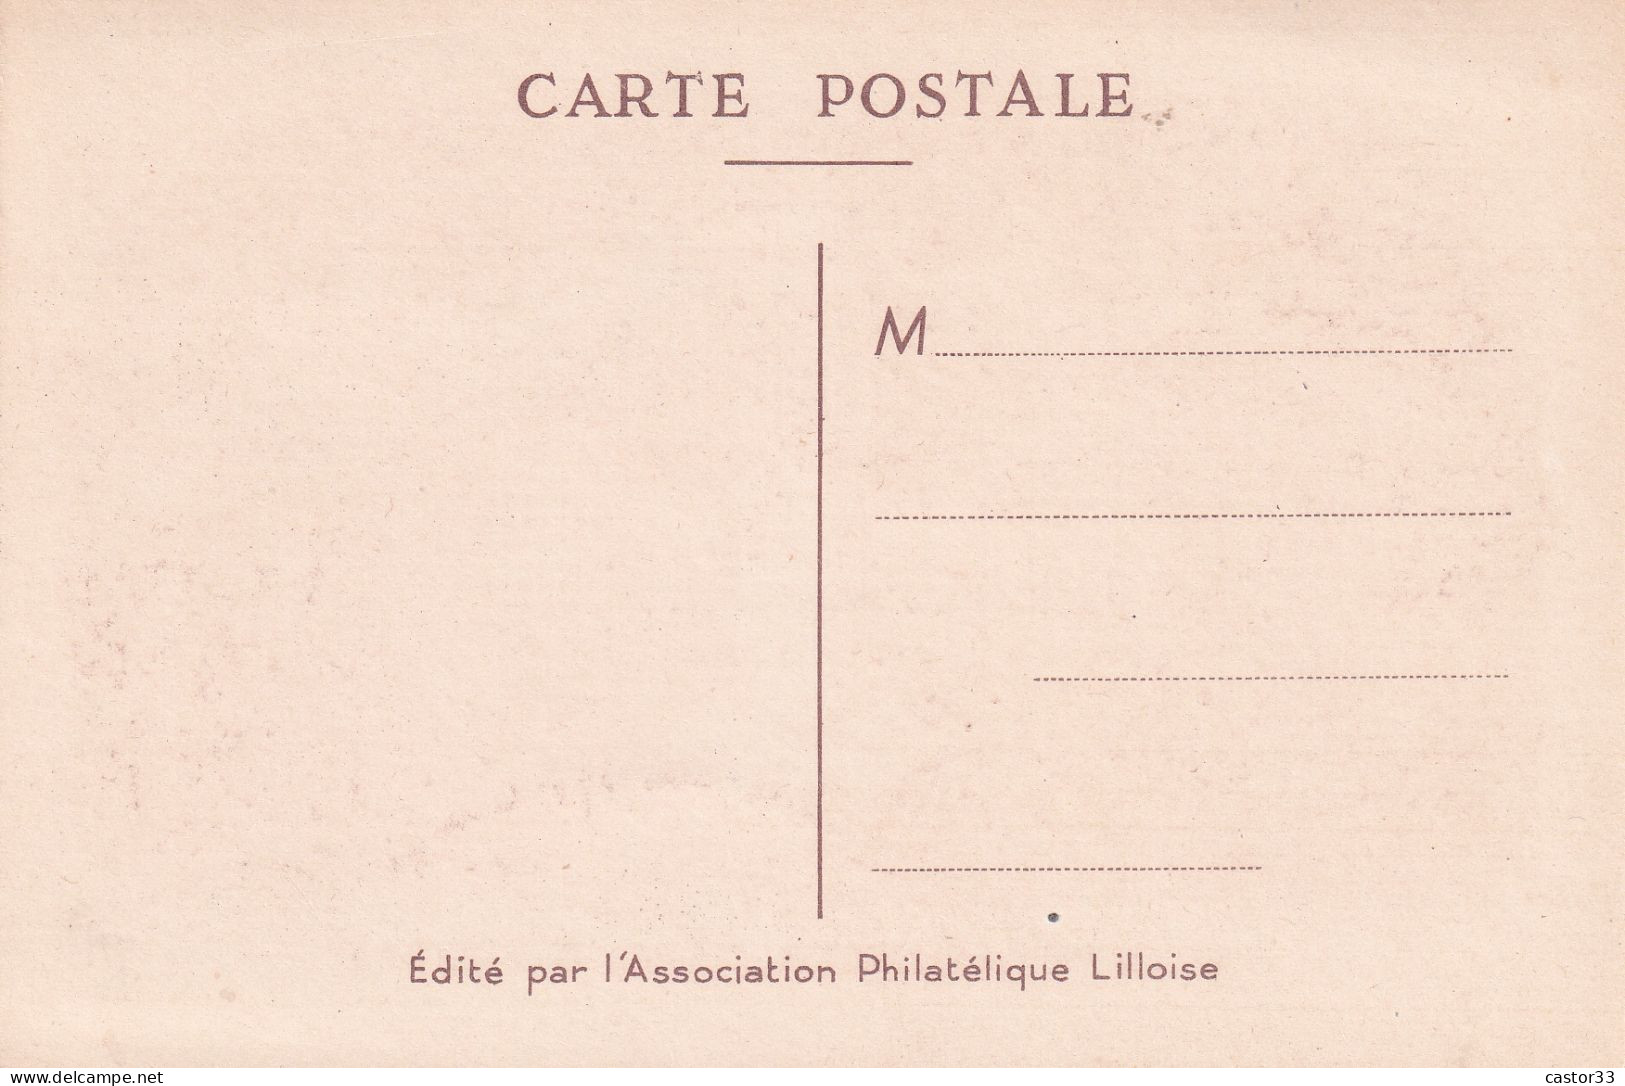 Journée Du Timbre 1957, Service Maritime Poste (Cité Hospitalière De Lille) - Giornata Del Francobollo